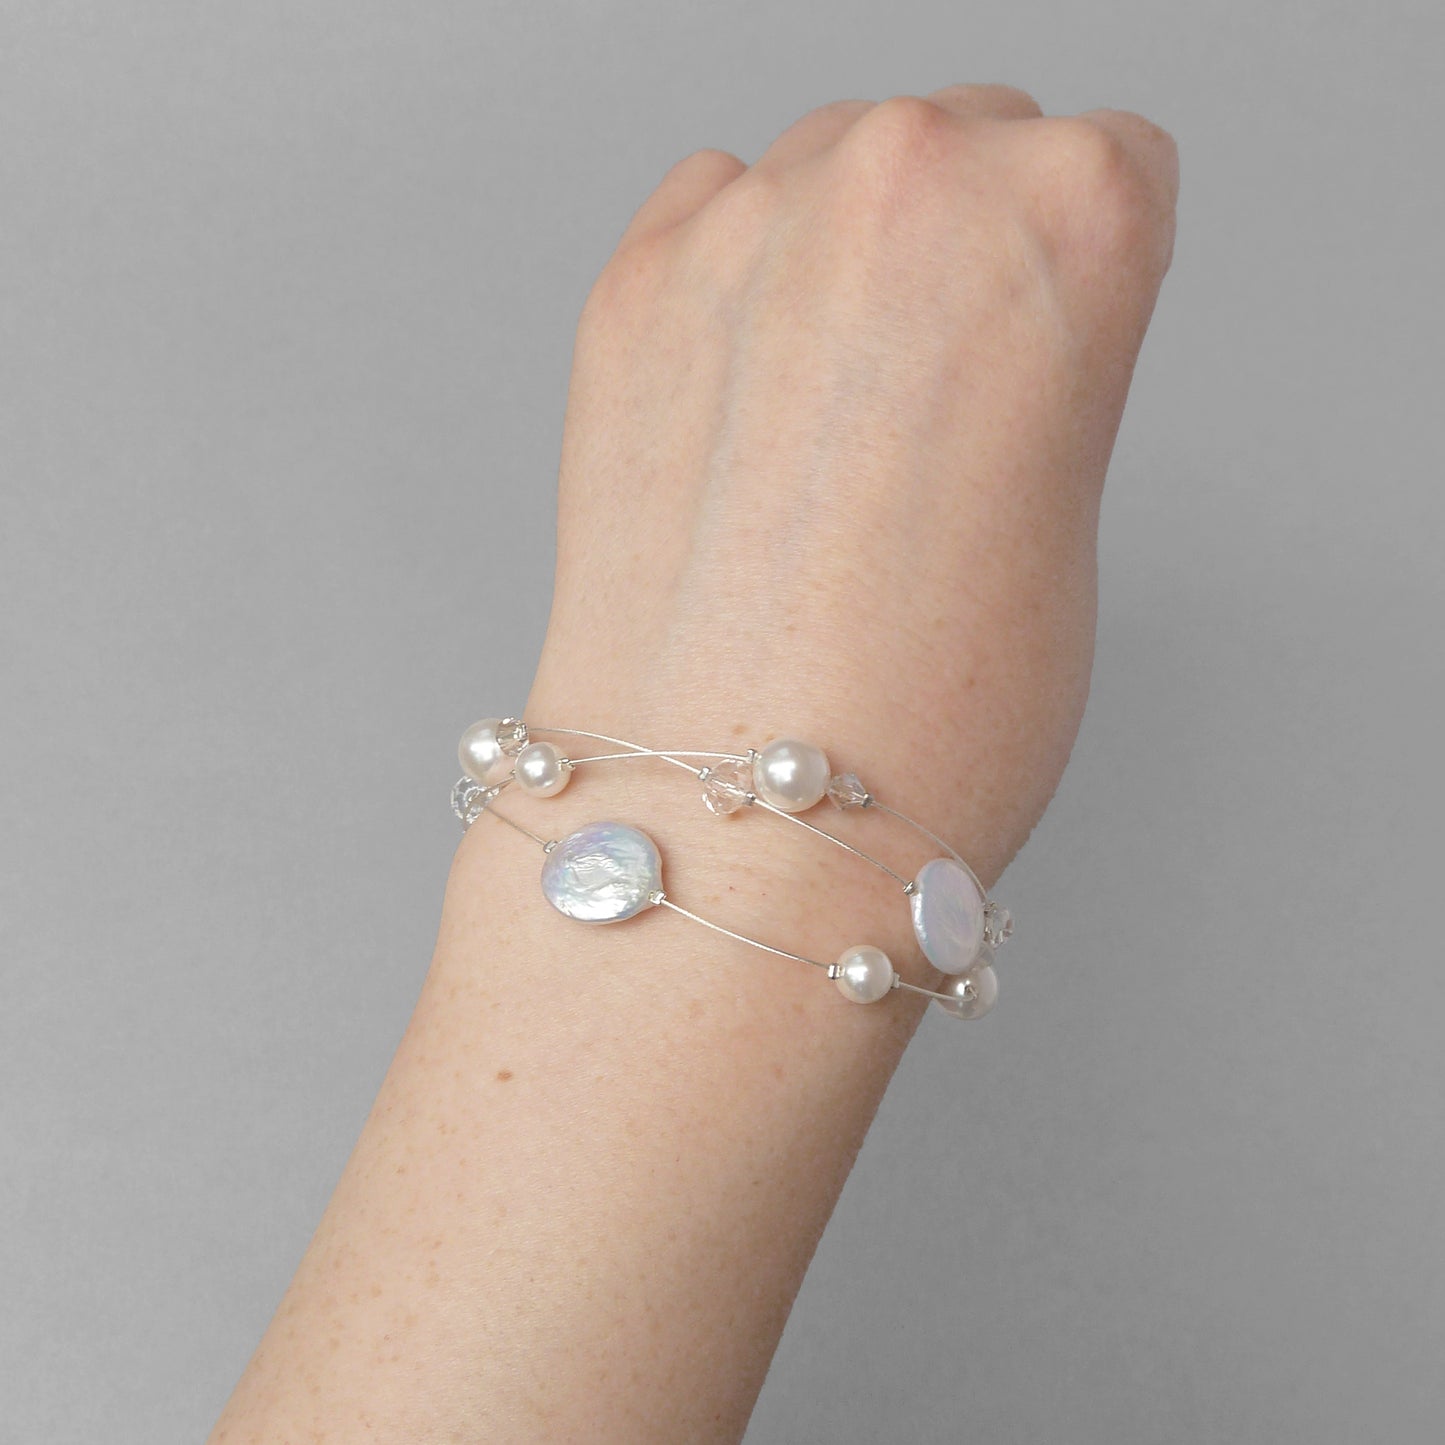 White floating pearl bracelet for weddings